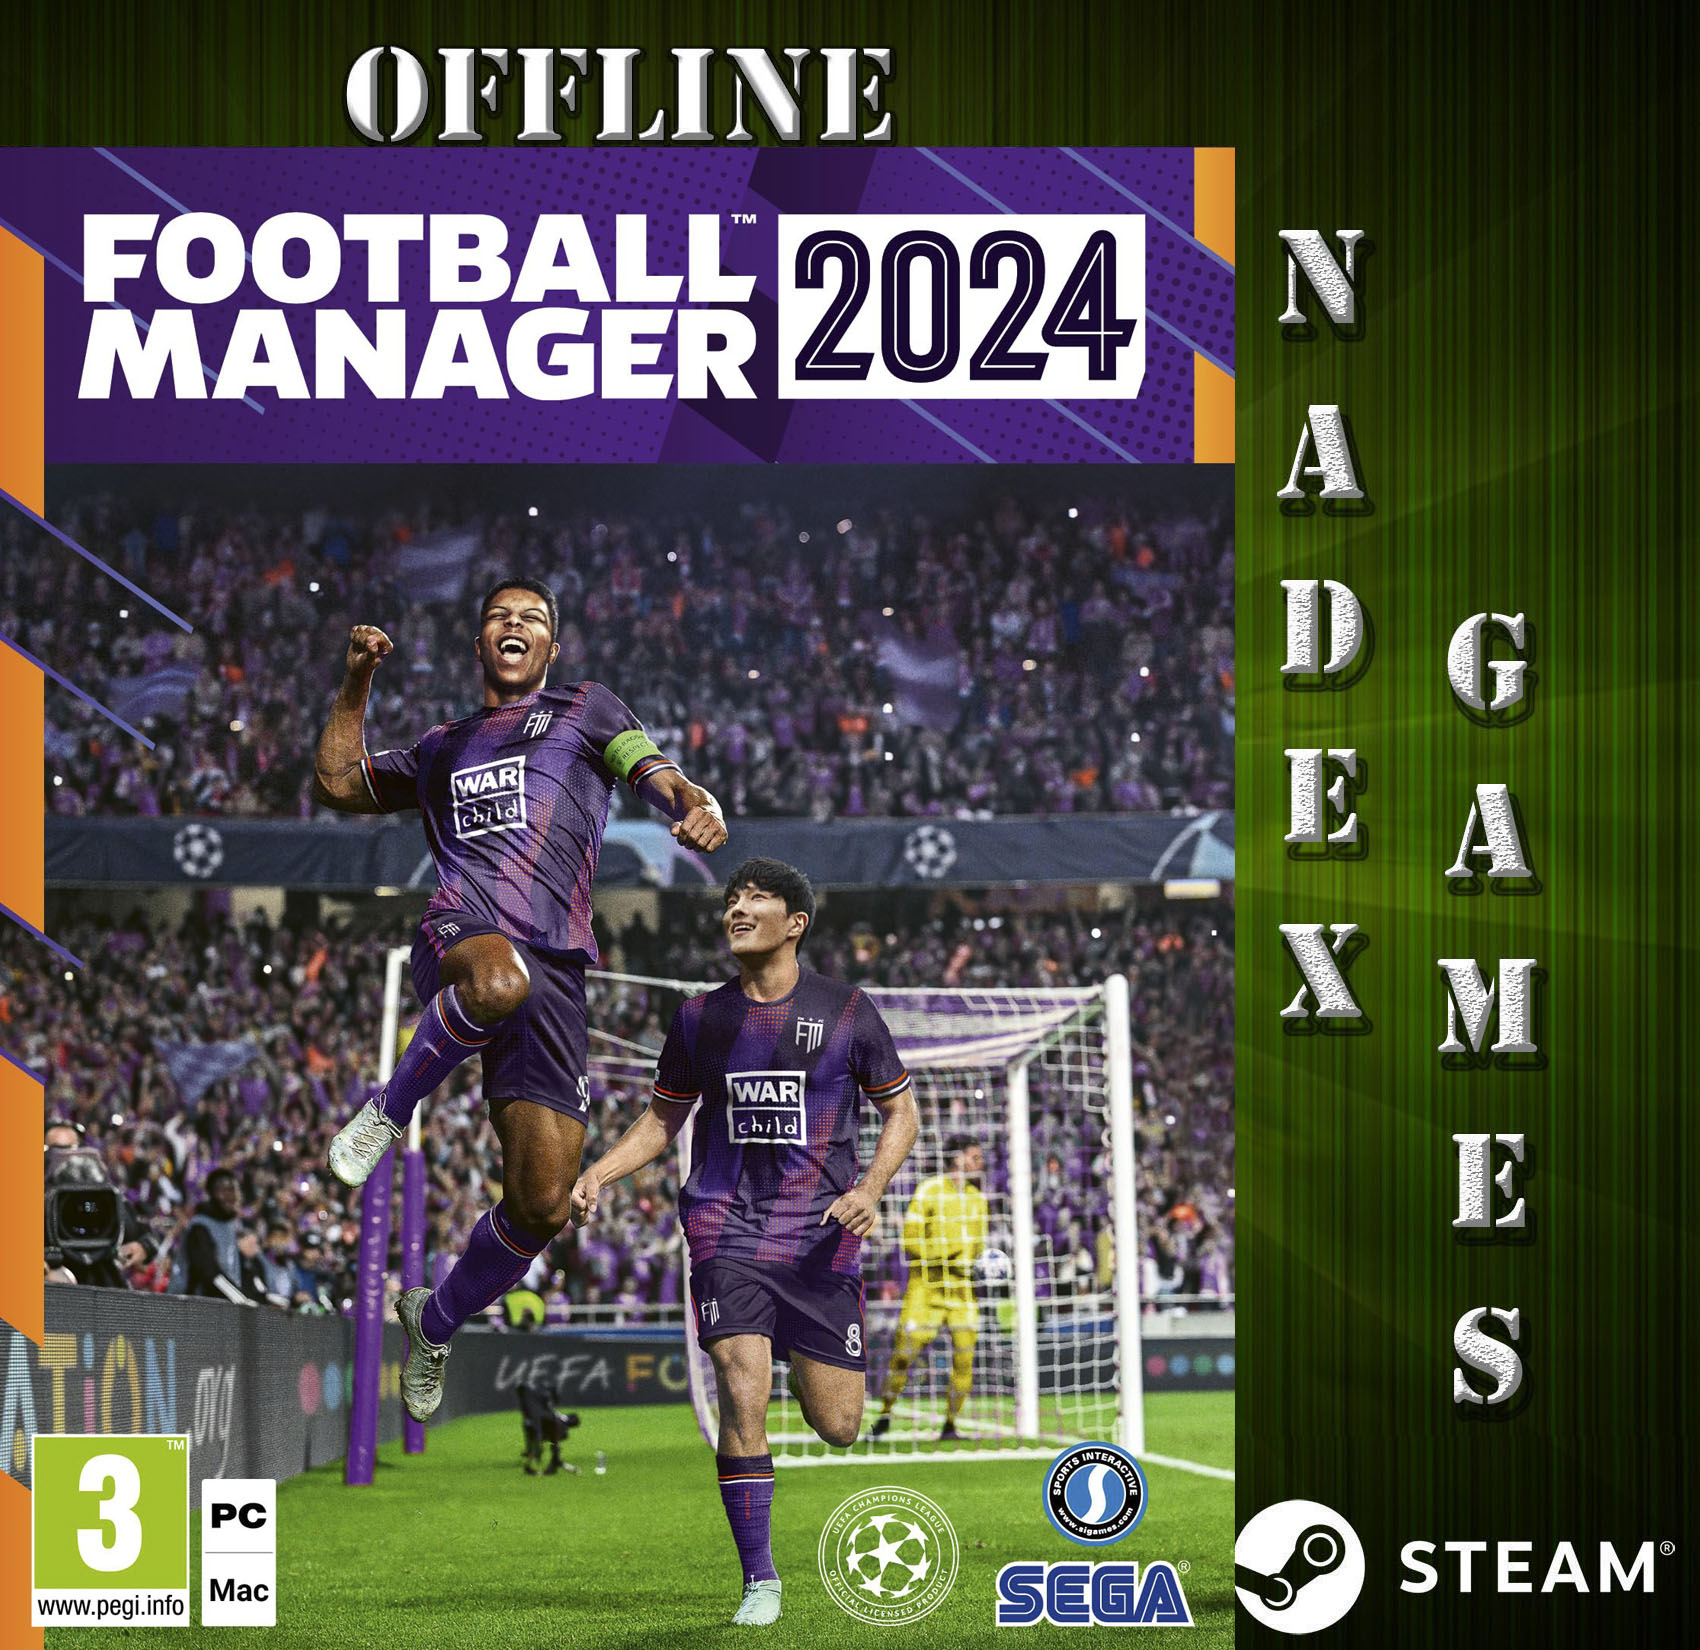 X-Box Football Manager 23 - Comprar Football Manager 2023 para jogar online  ou offline no brasil pelo melhor preço